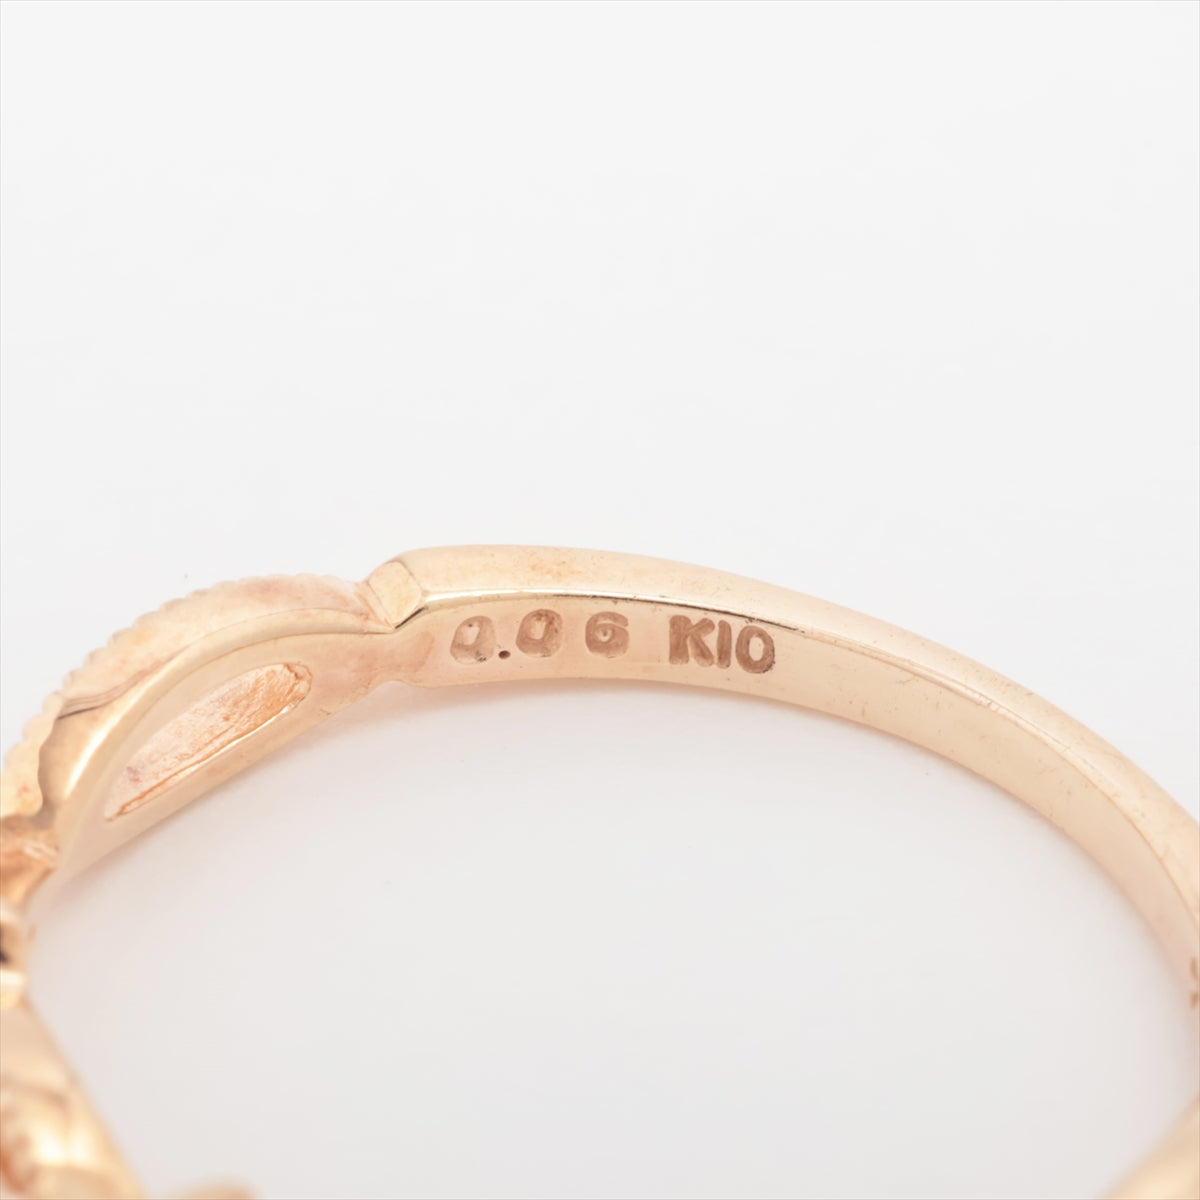 Agat Diamond Ring K10 (PG) 1.0g 0.06